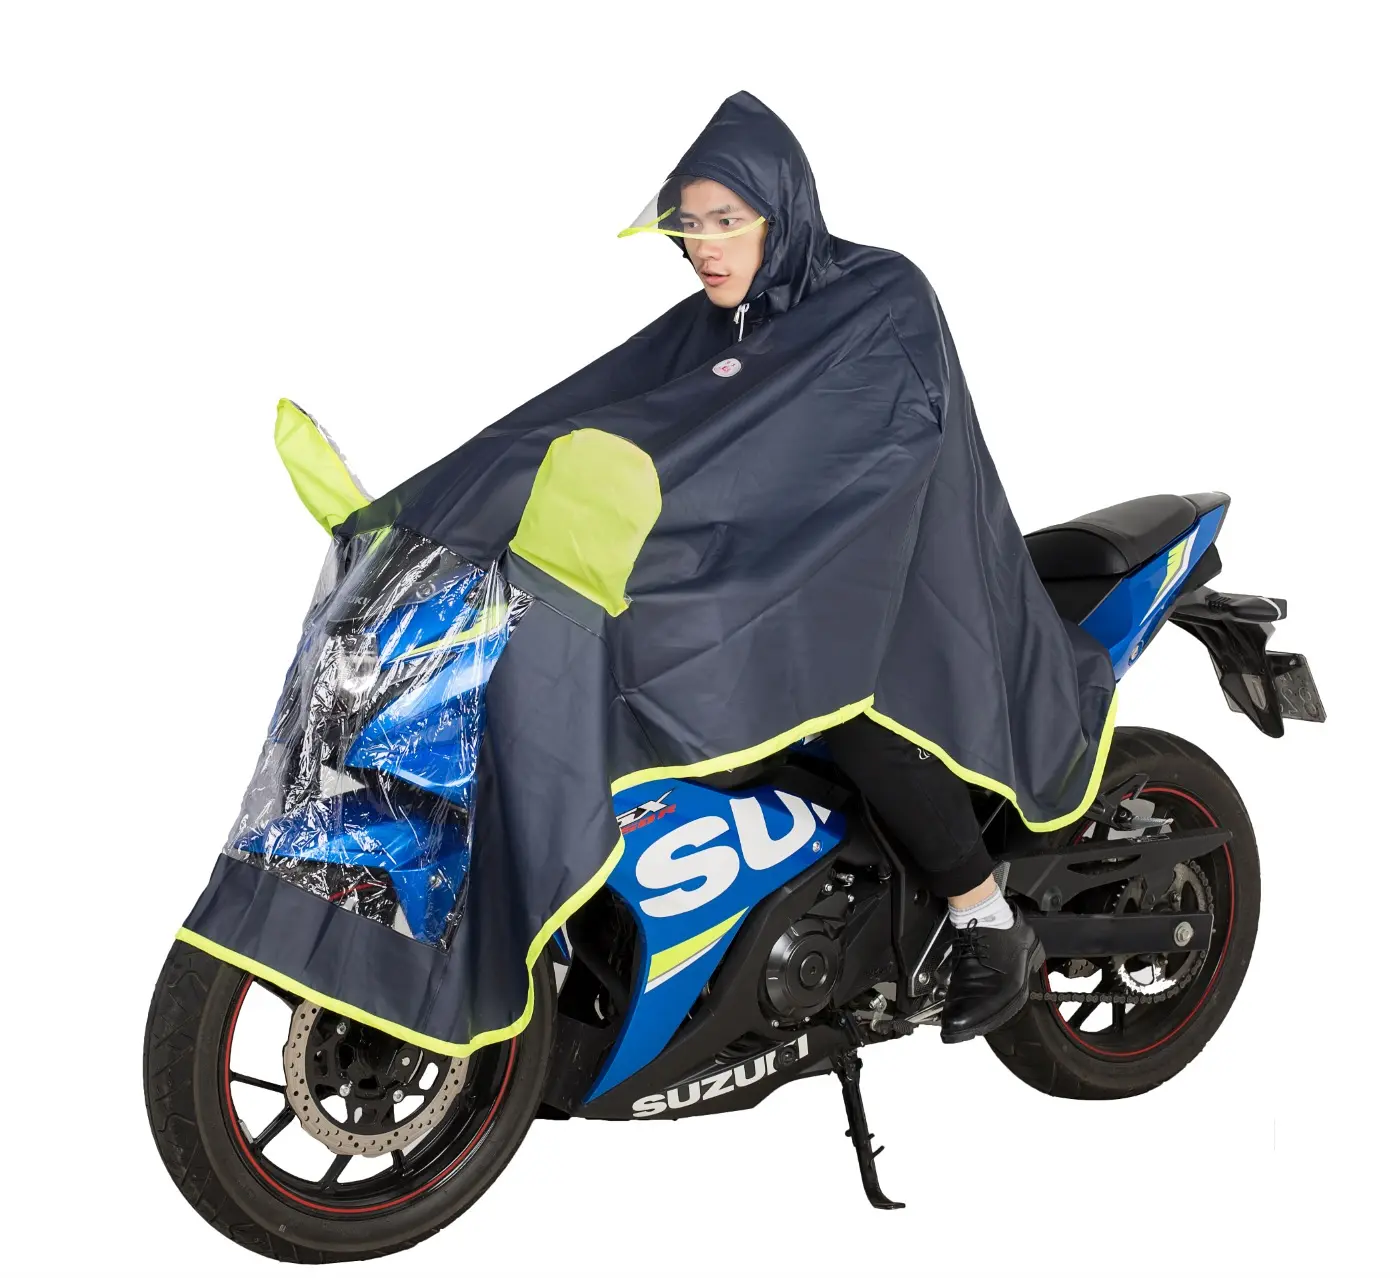 गर्म बिक्री पूर्ण शरीर बारिश की रोकथाम महिलाओं की पुरुषों की मोटरसाइकिल की सवारी करने वाली मोटरसाइकिल पोंचो